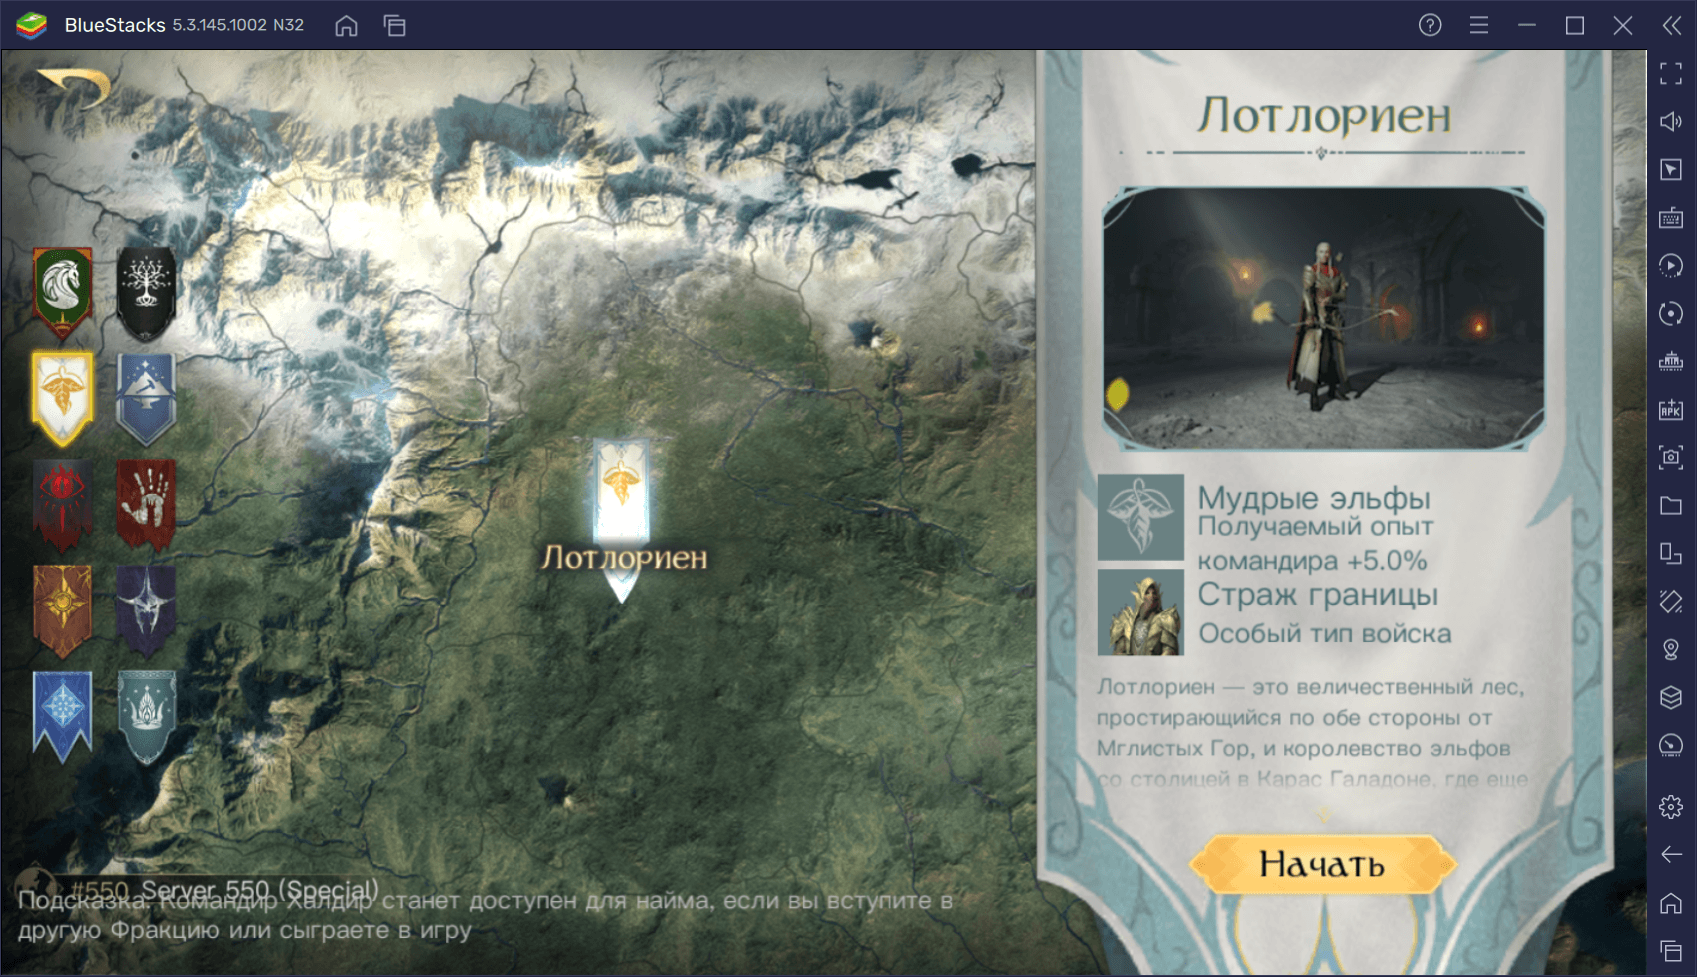 Какую фракцию выбрать новичкам в игре Lord of the Rings: Rise to War?